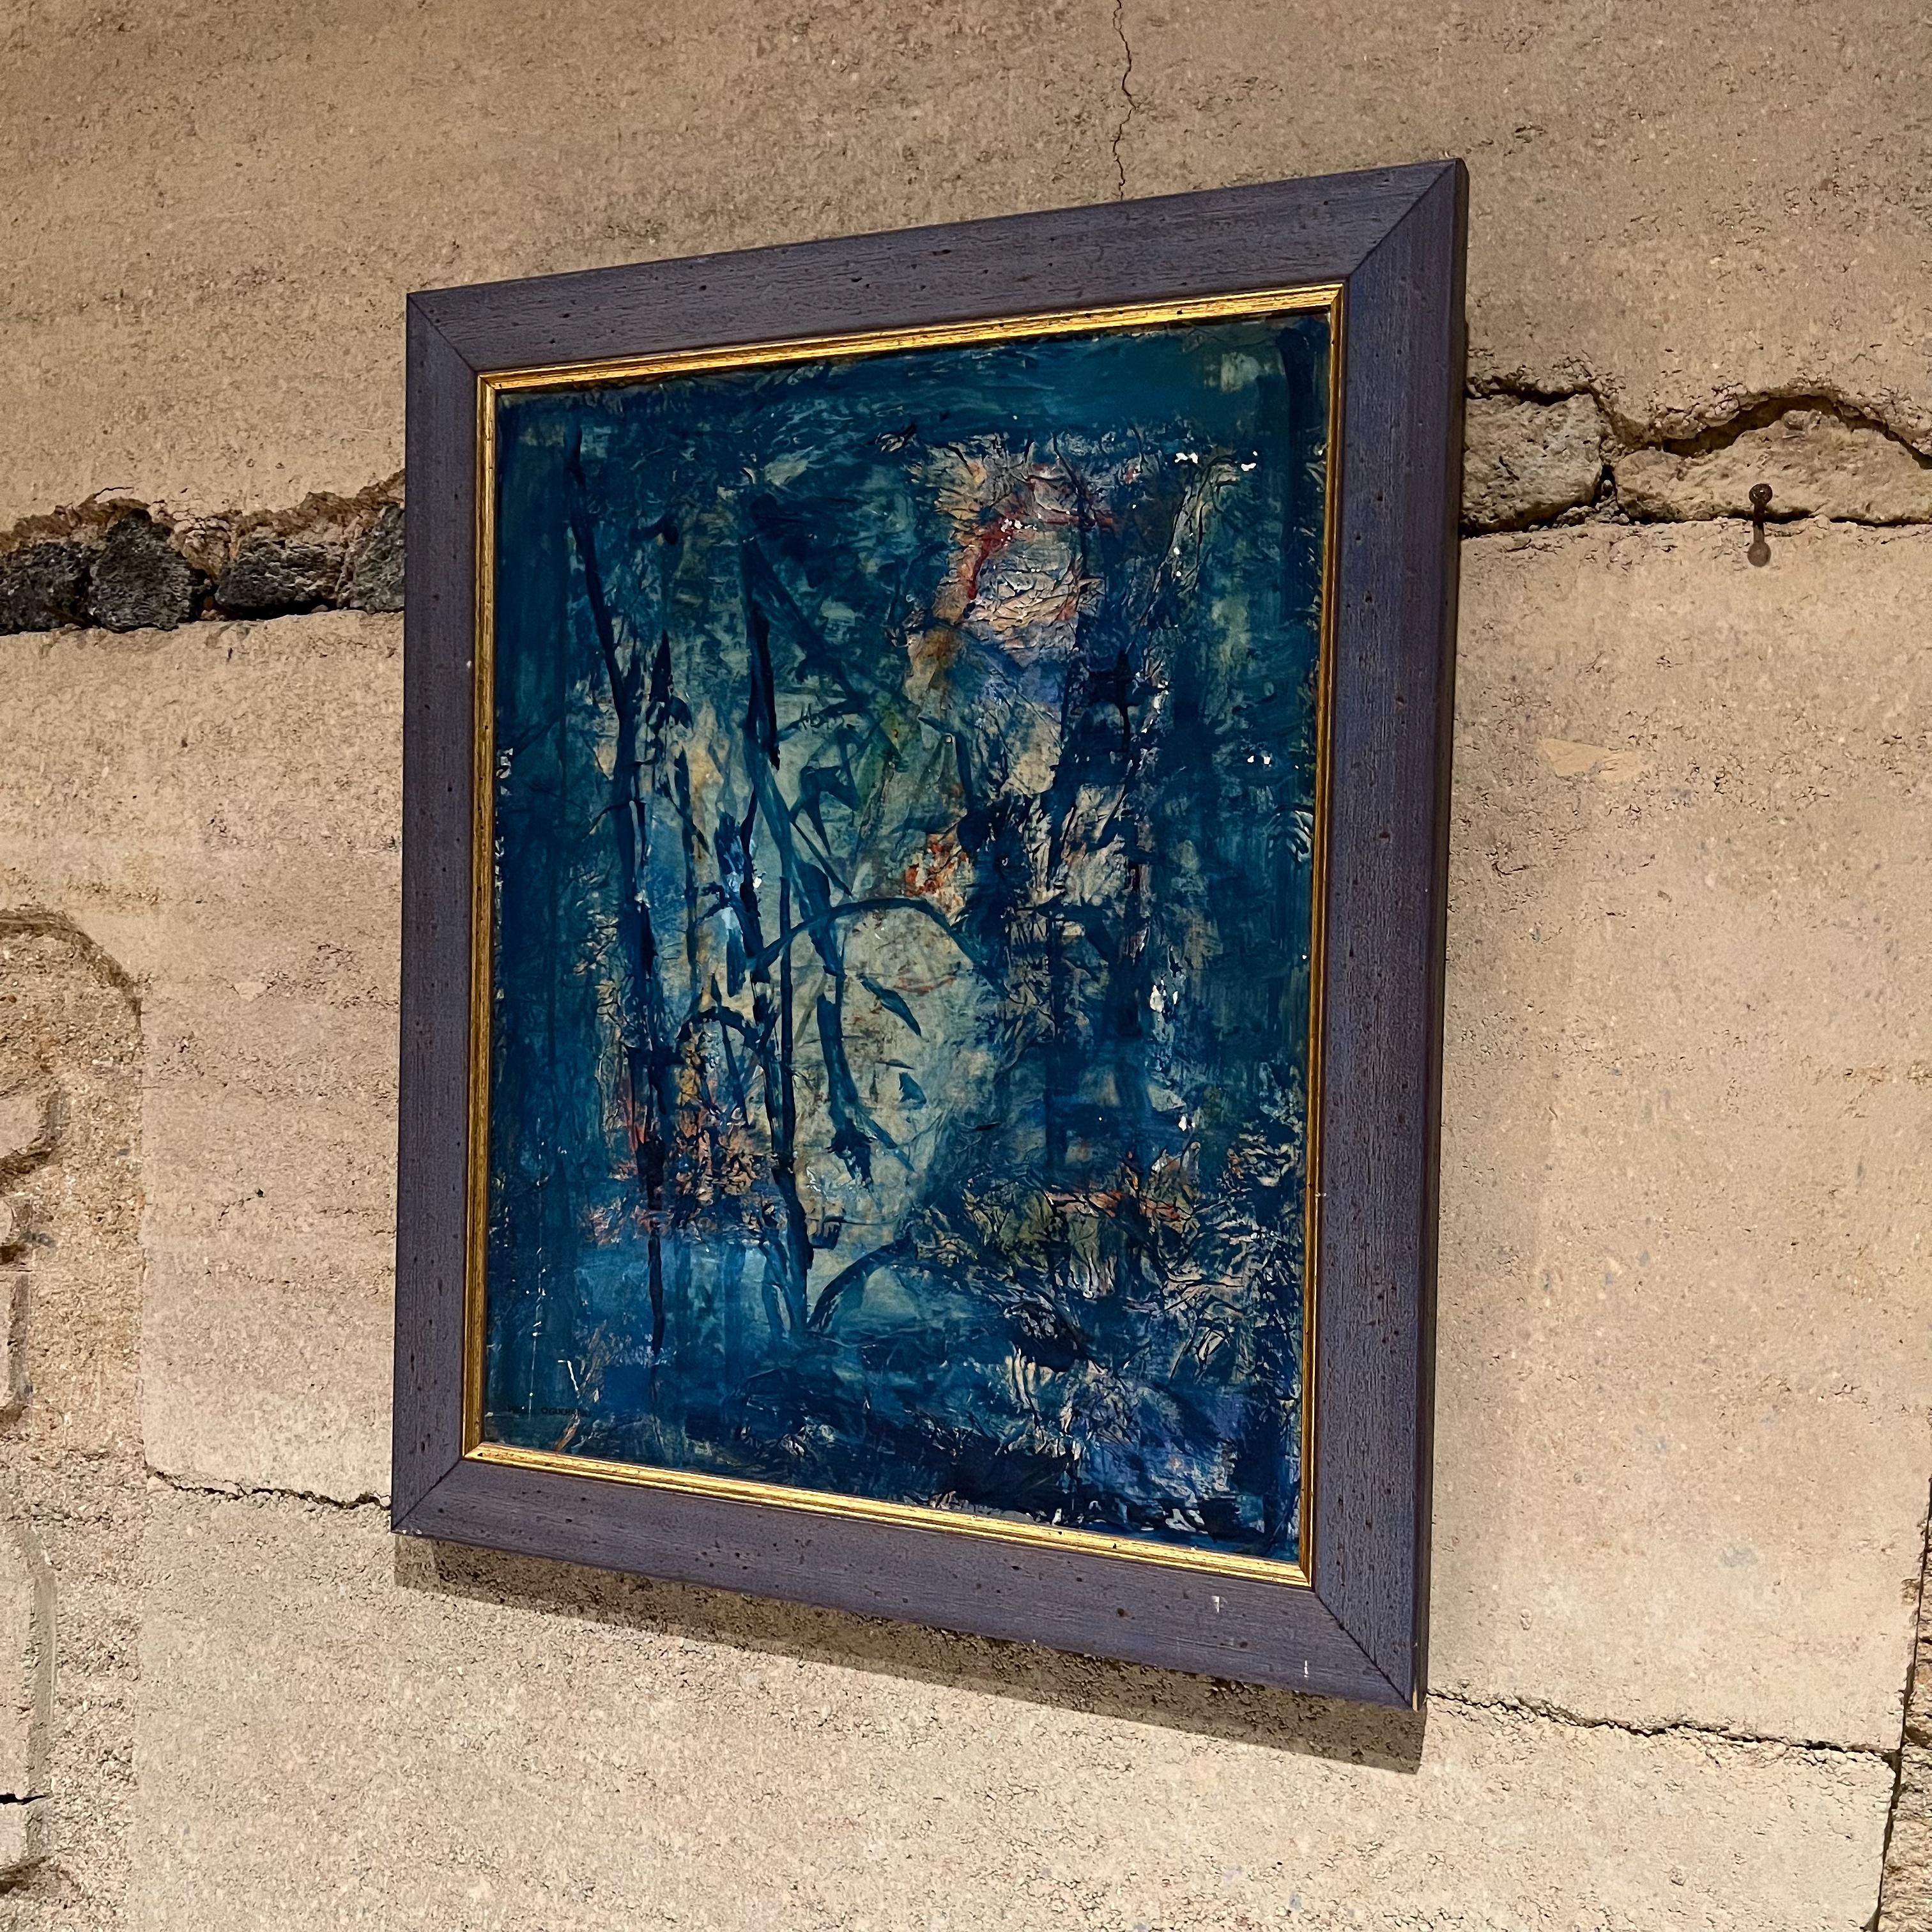 Moderne abstrakte Kunst
Helen Oguerran Gemälde Öl auf Leinwand Abstrakte Kunst
Unterzeichnet
Rahmen 23,5 H x 19,5 B x 1 T Kunst 19,5 H x 15,5 B
Gebrauchter Original-Vintage-Zustand unrestauriert.
Siehe die beigefügten Bilder.
Lieferung nach LA


